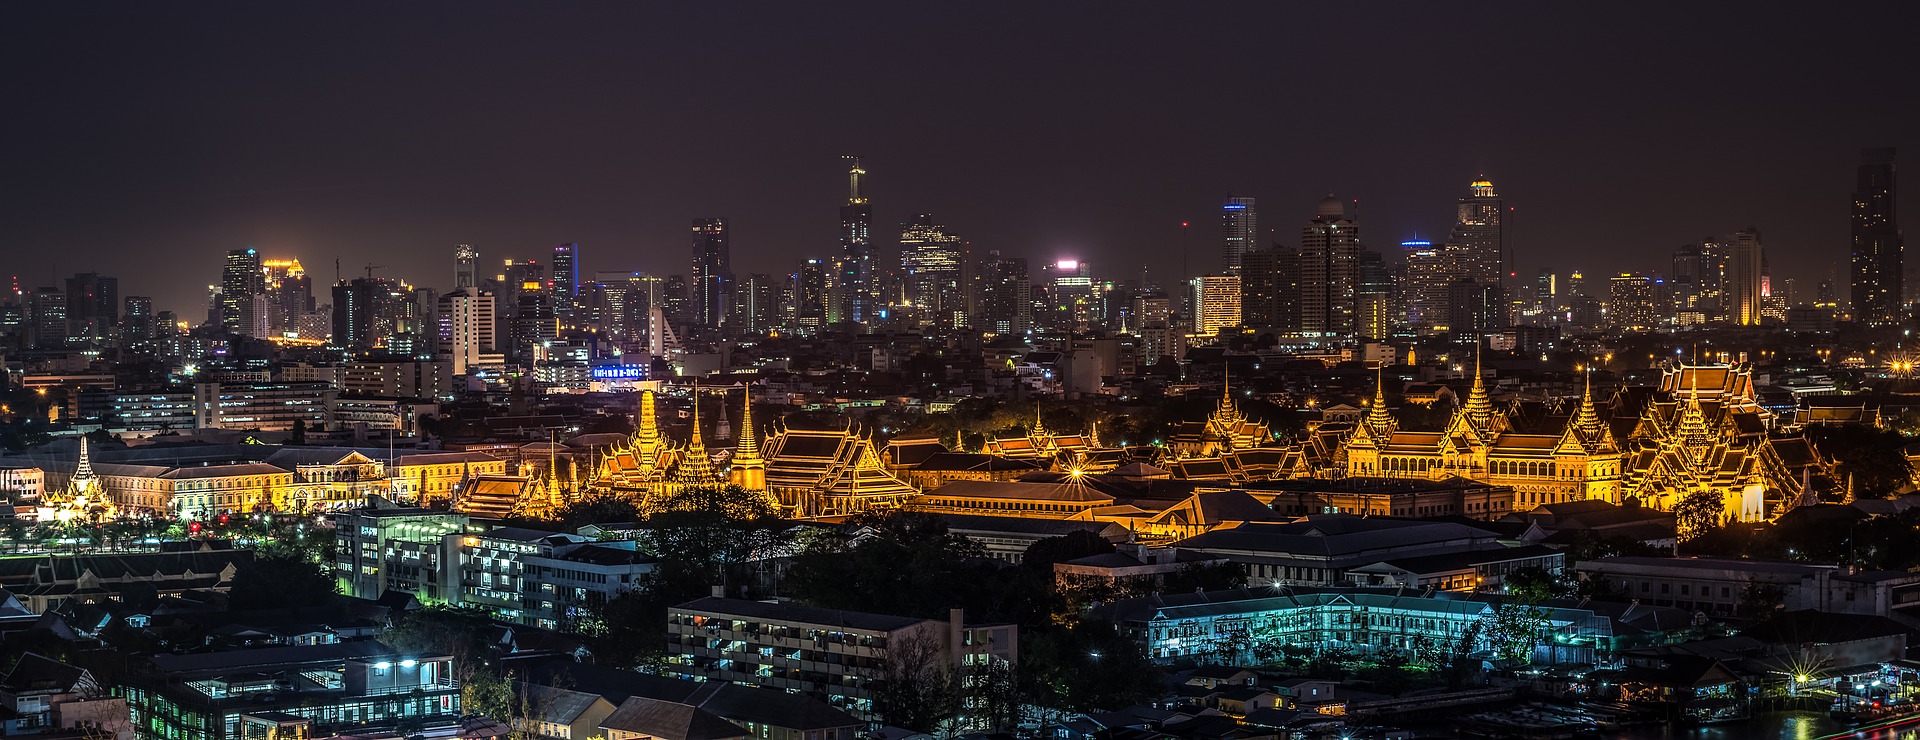 Иностранные туристы чаще всего посещают Бангкок, а больше всего денег тратят в Дубае